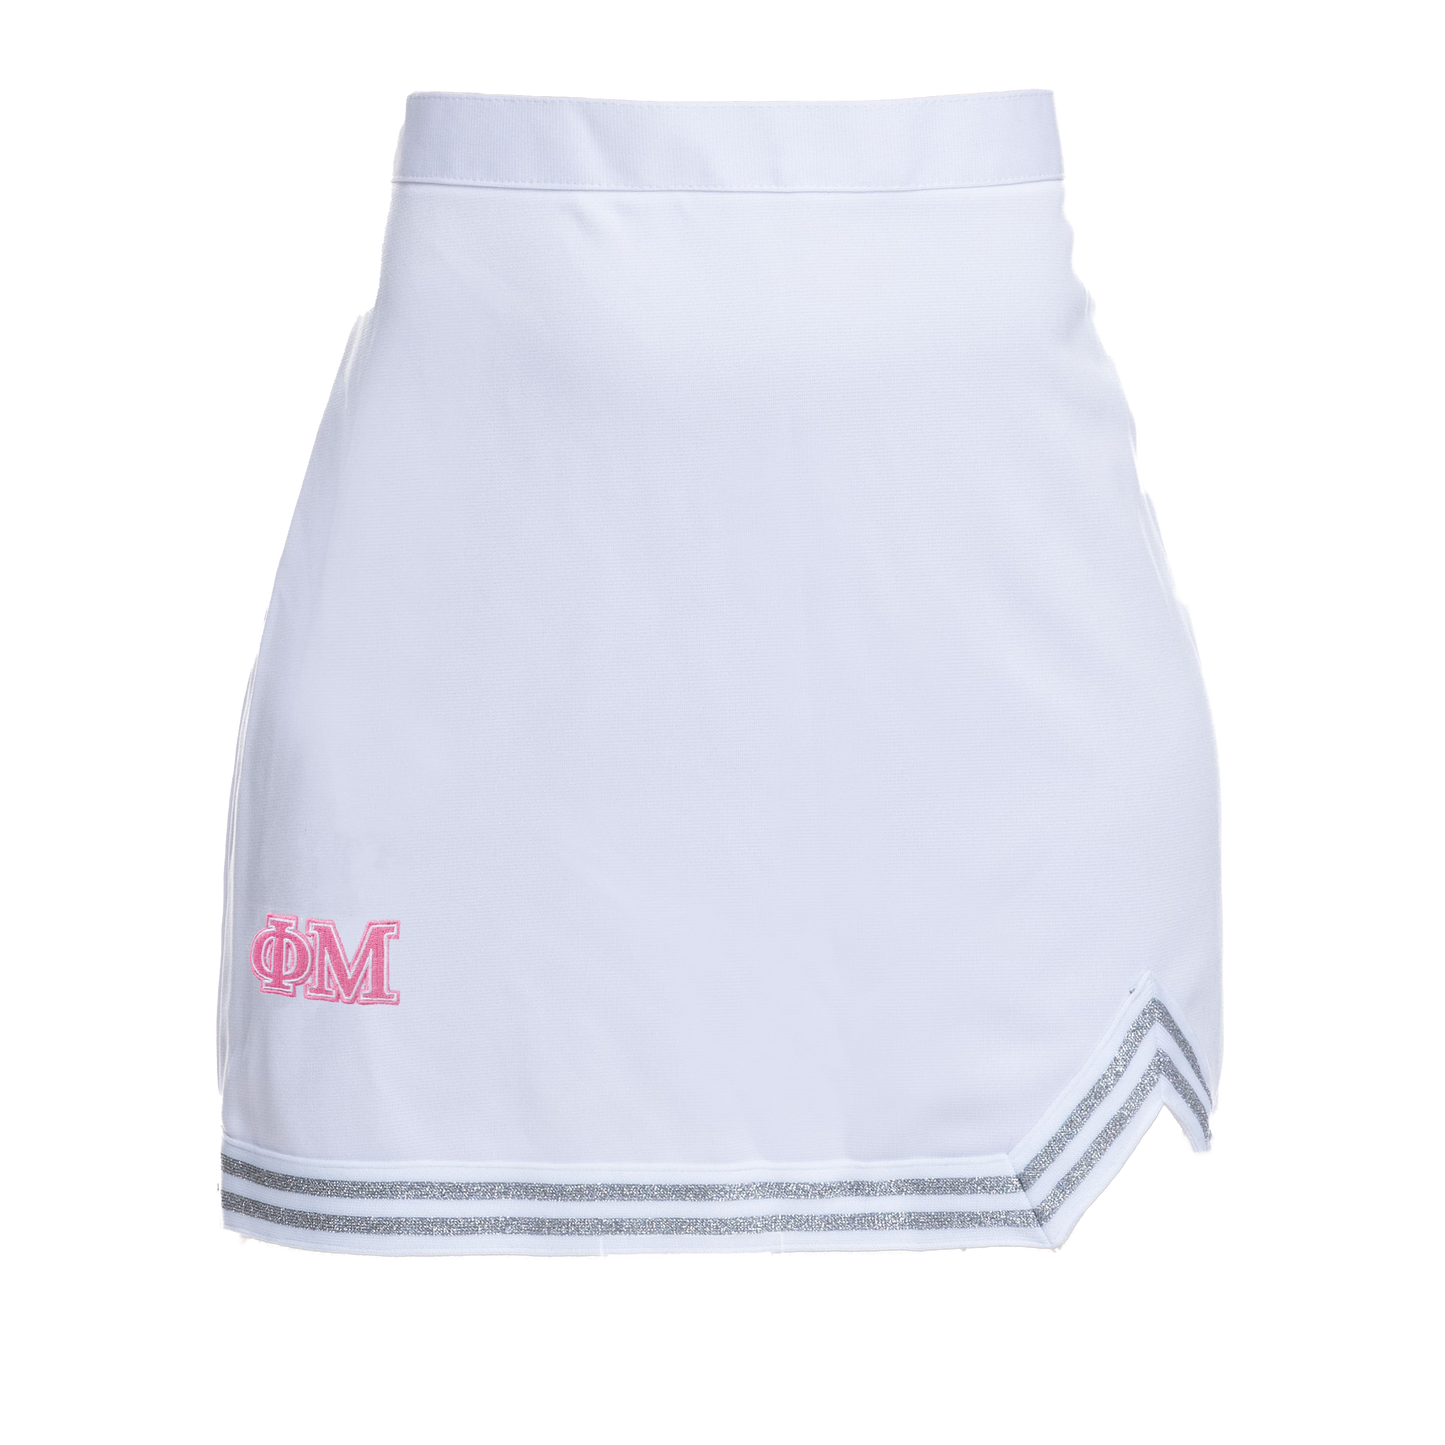 Phi Mu Cheer Skirt